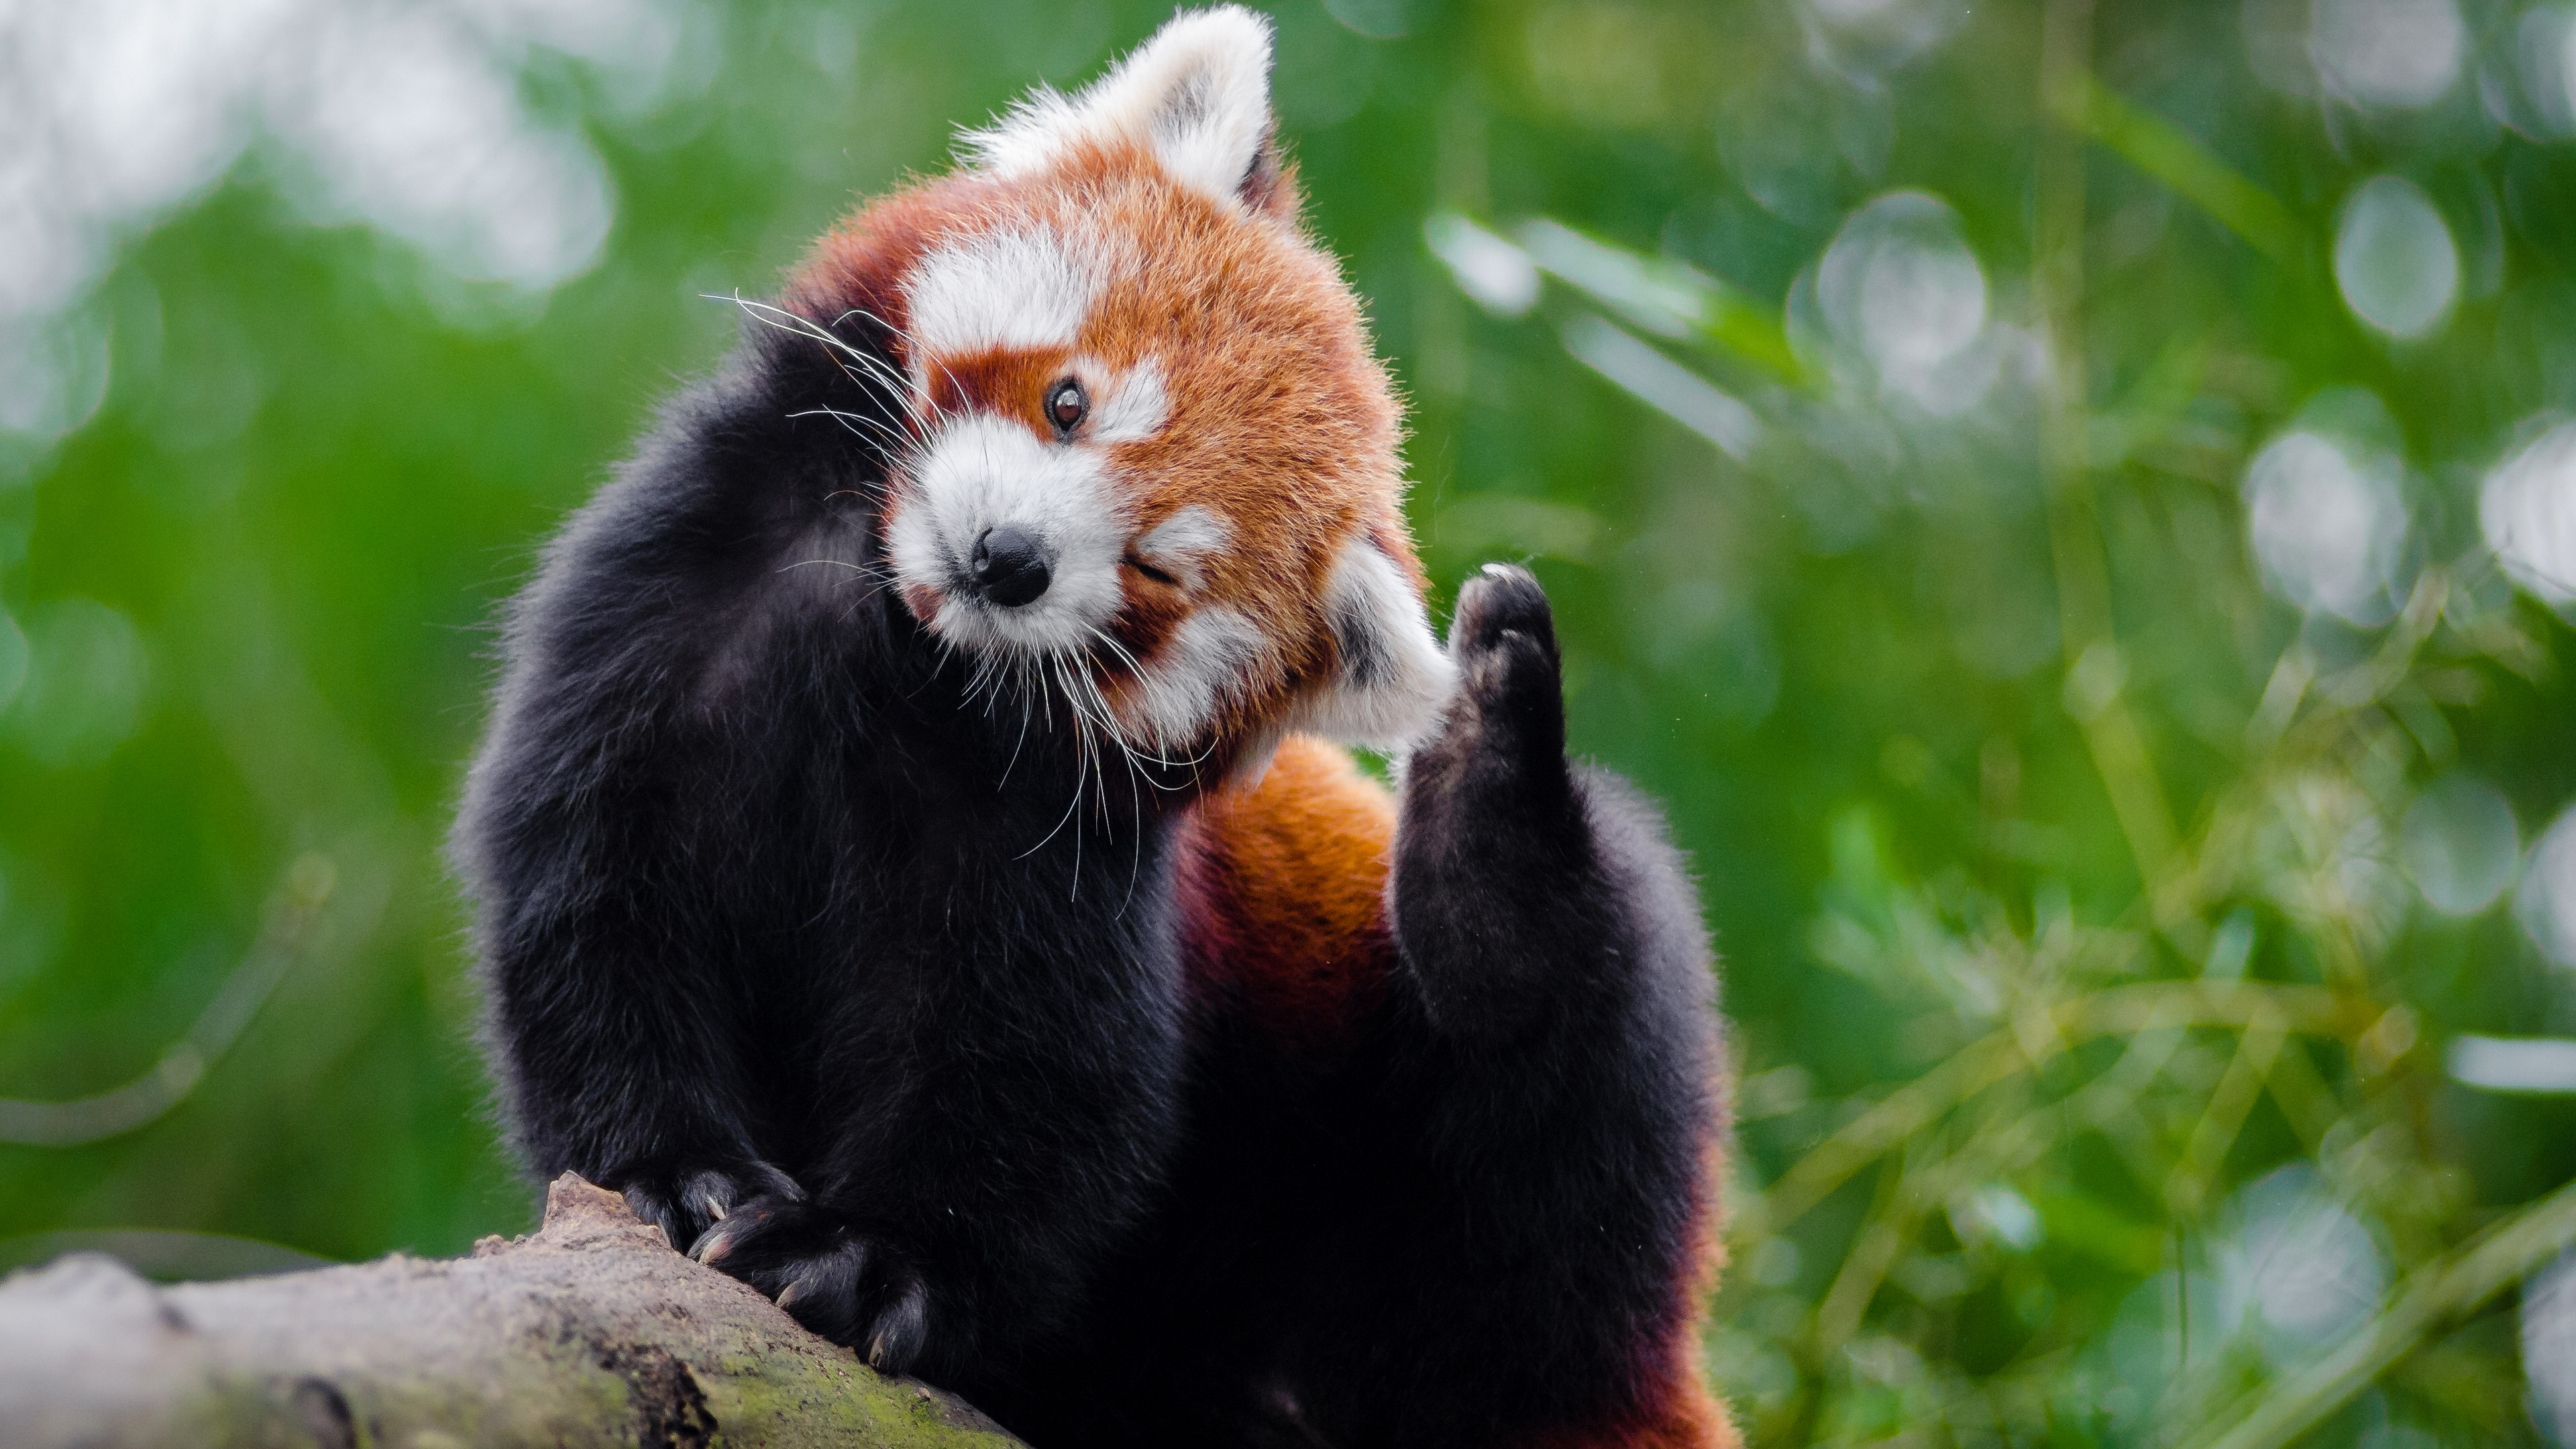 小熊猫 redpanda - 堆糖,美图壁纸兴趣社区